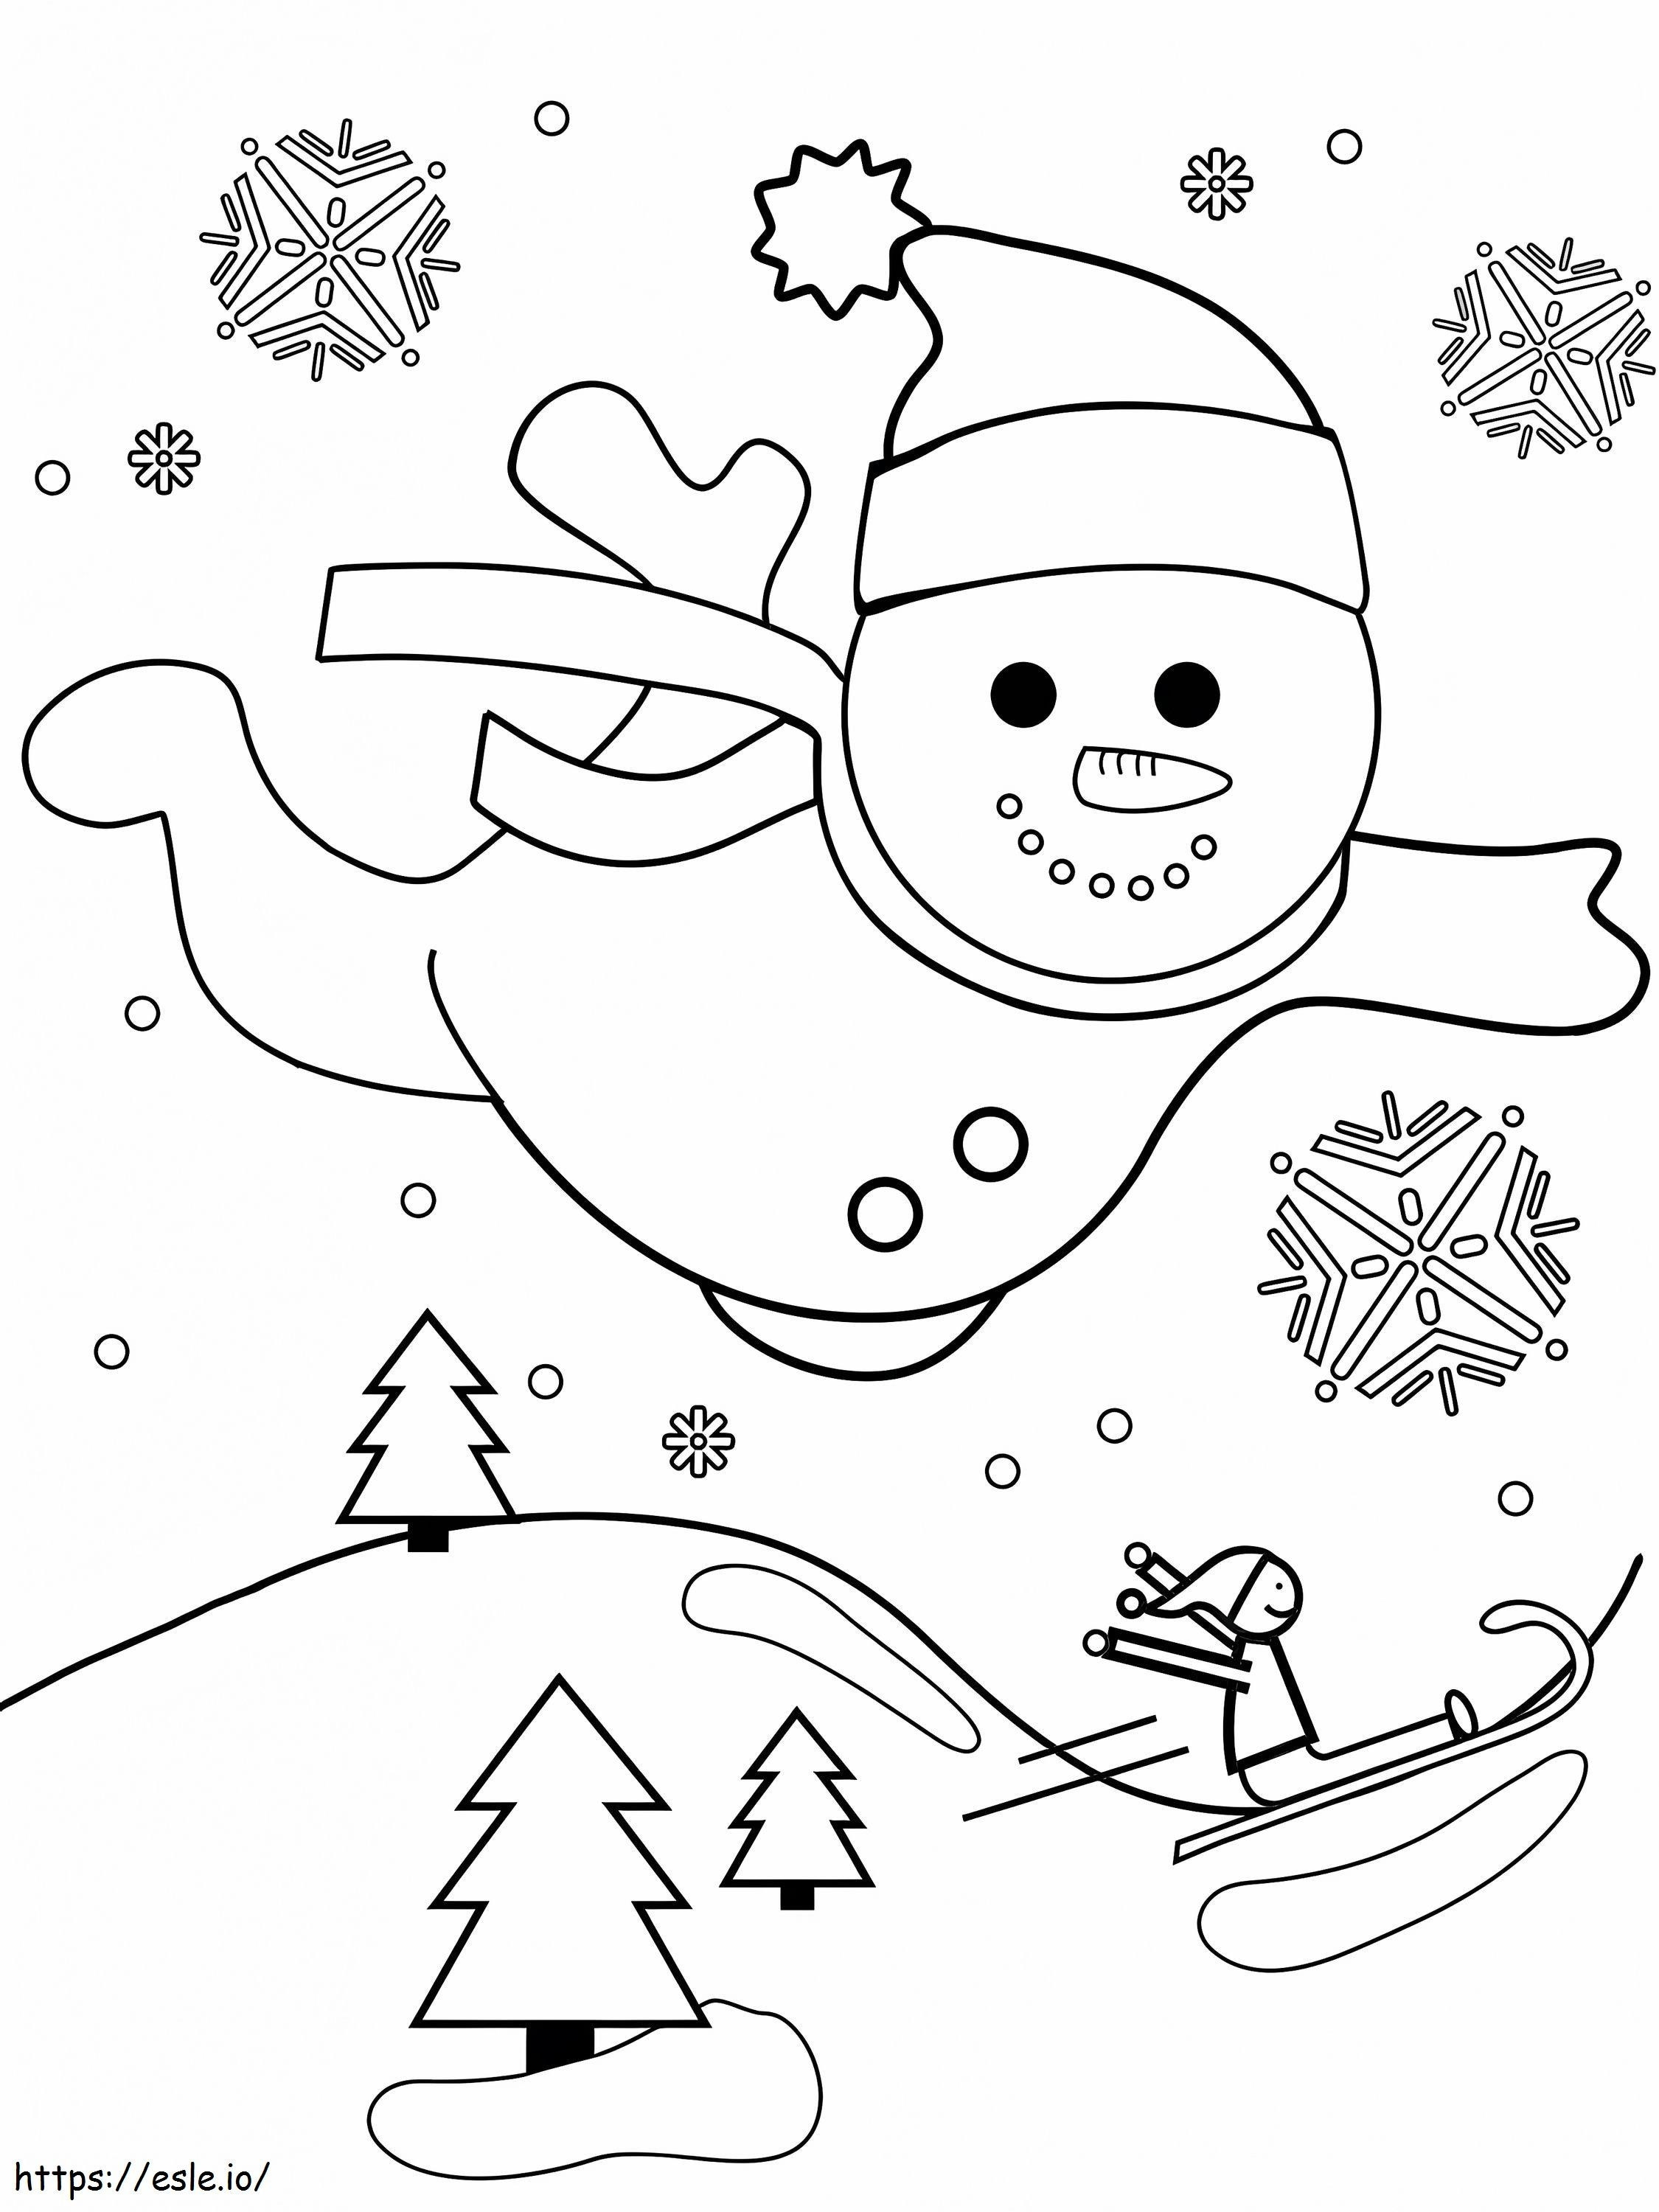 Boneco de neve voando pelo ar 768X1024 para colorir